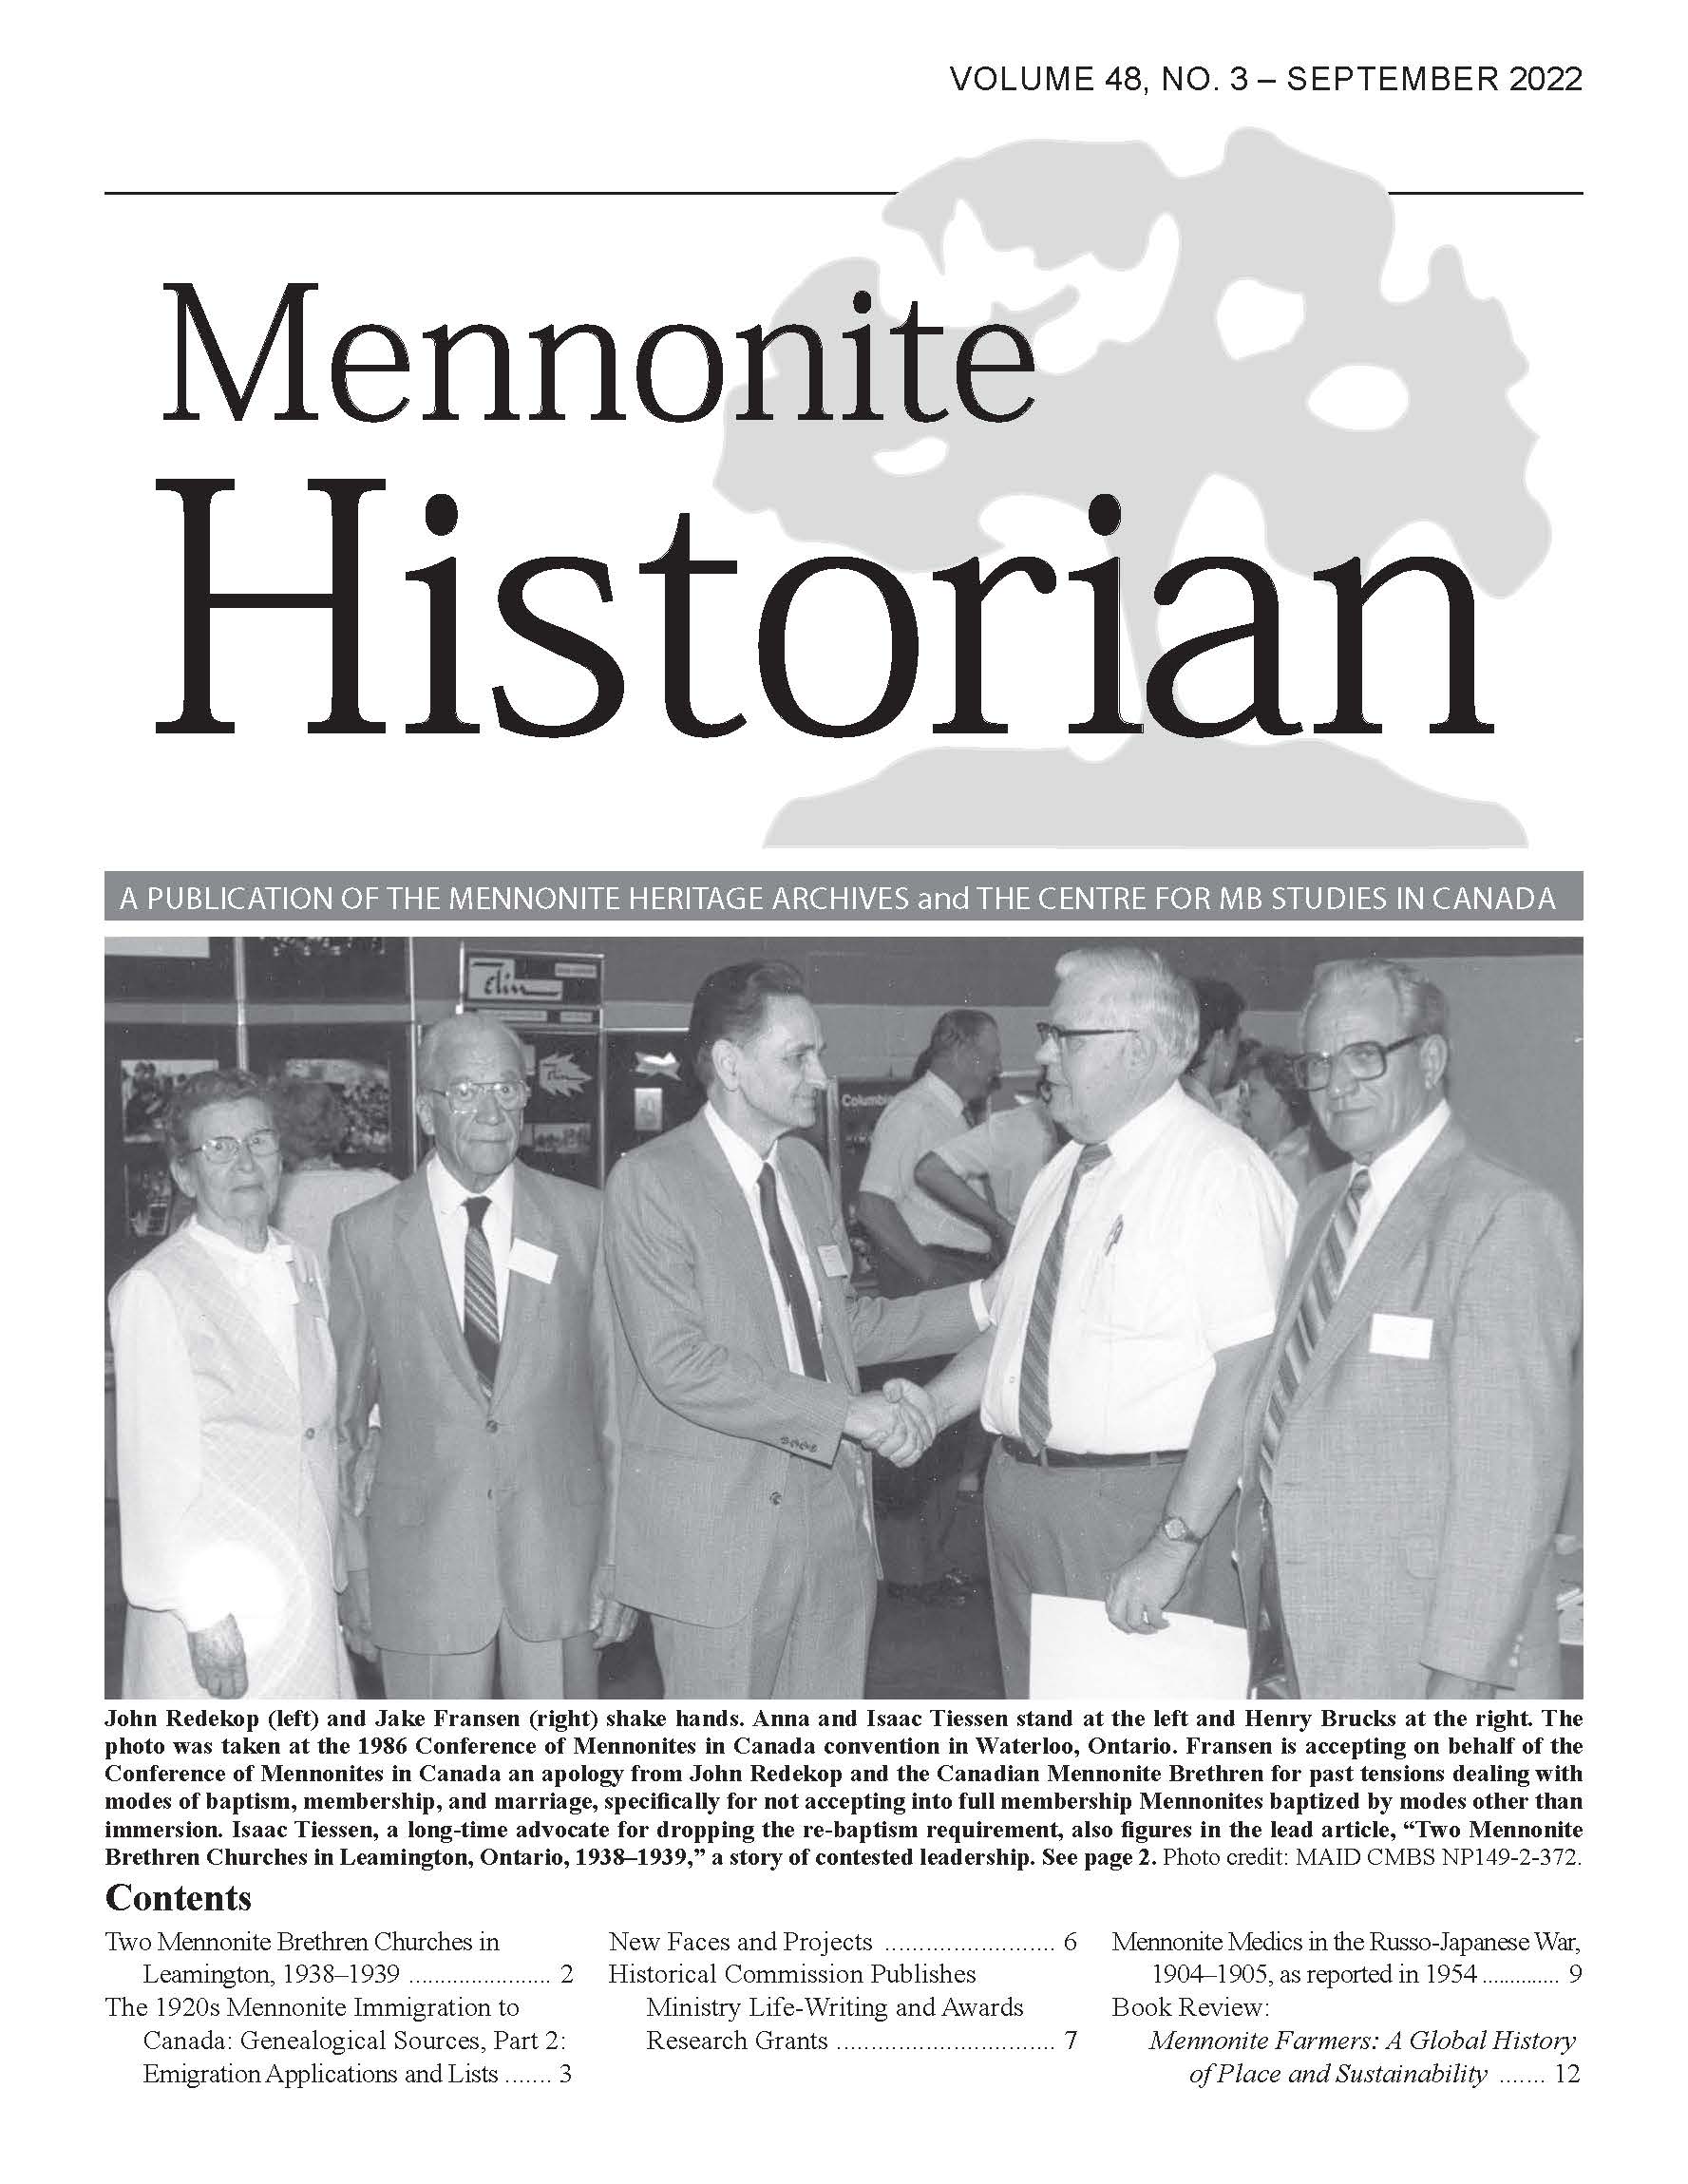 Mennonite Historian (September 2022)